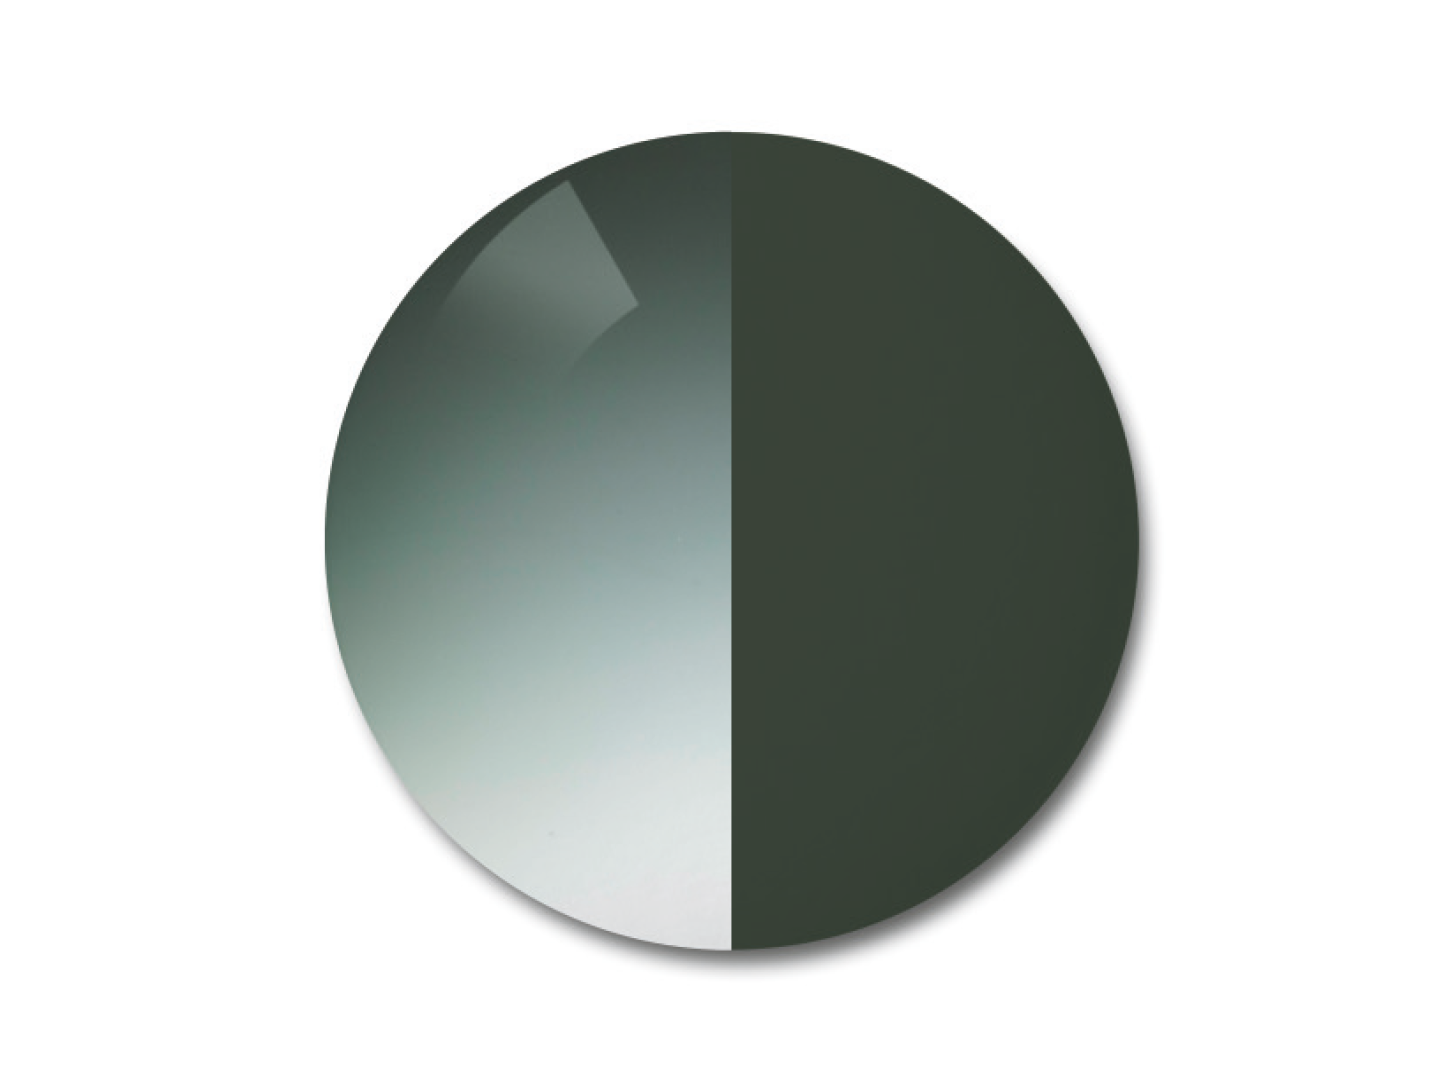 蔡司 AdaptiveSun 漸變灰綠色智能變色太陽鏡片圖解說明 